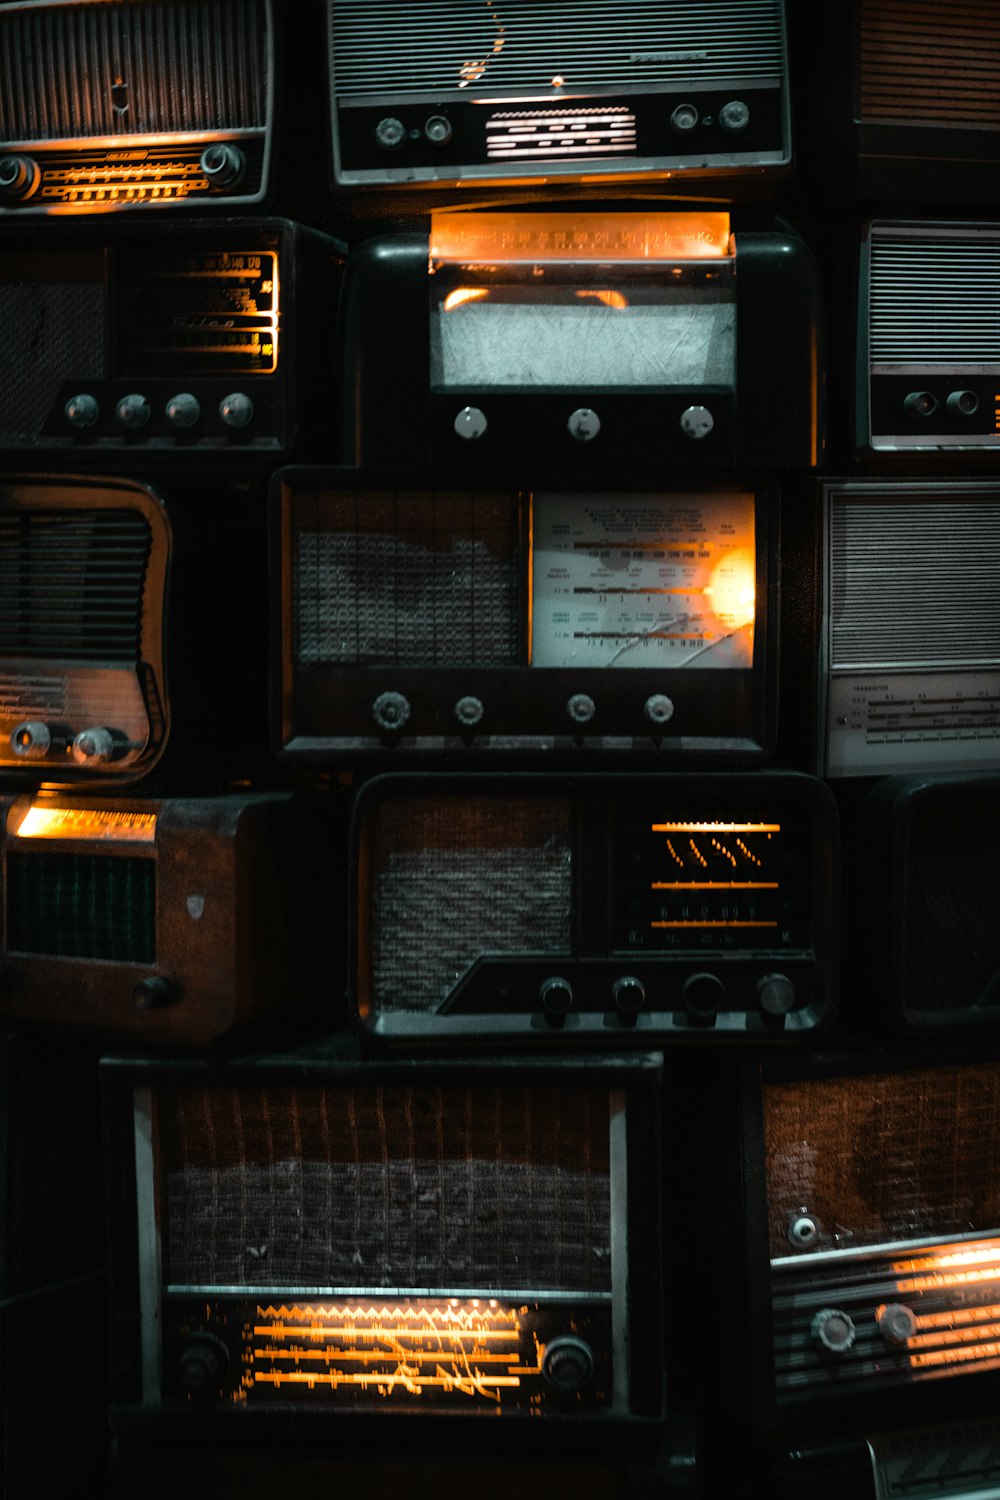 Un tas de vieilles radios sont empilées les unes sur les autres